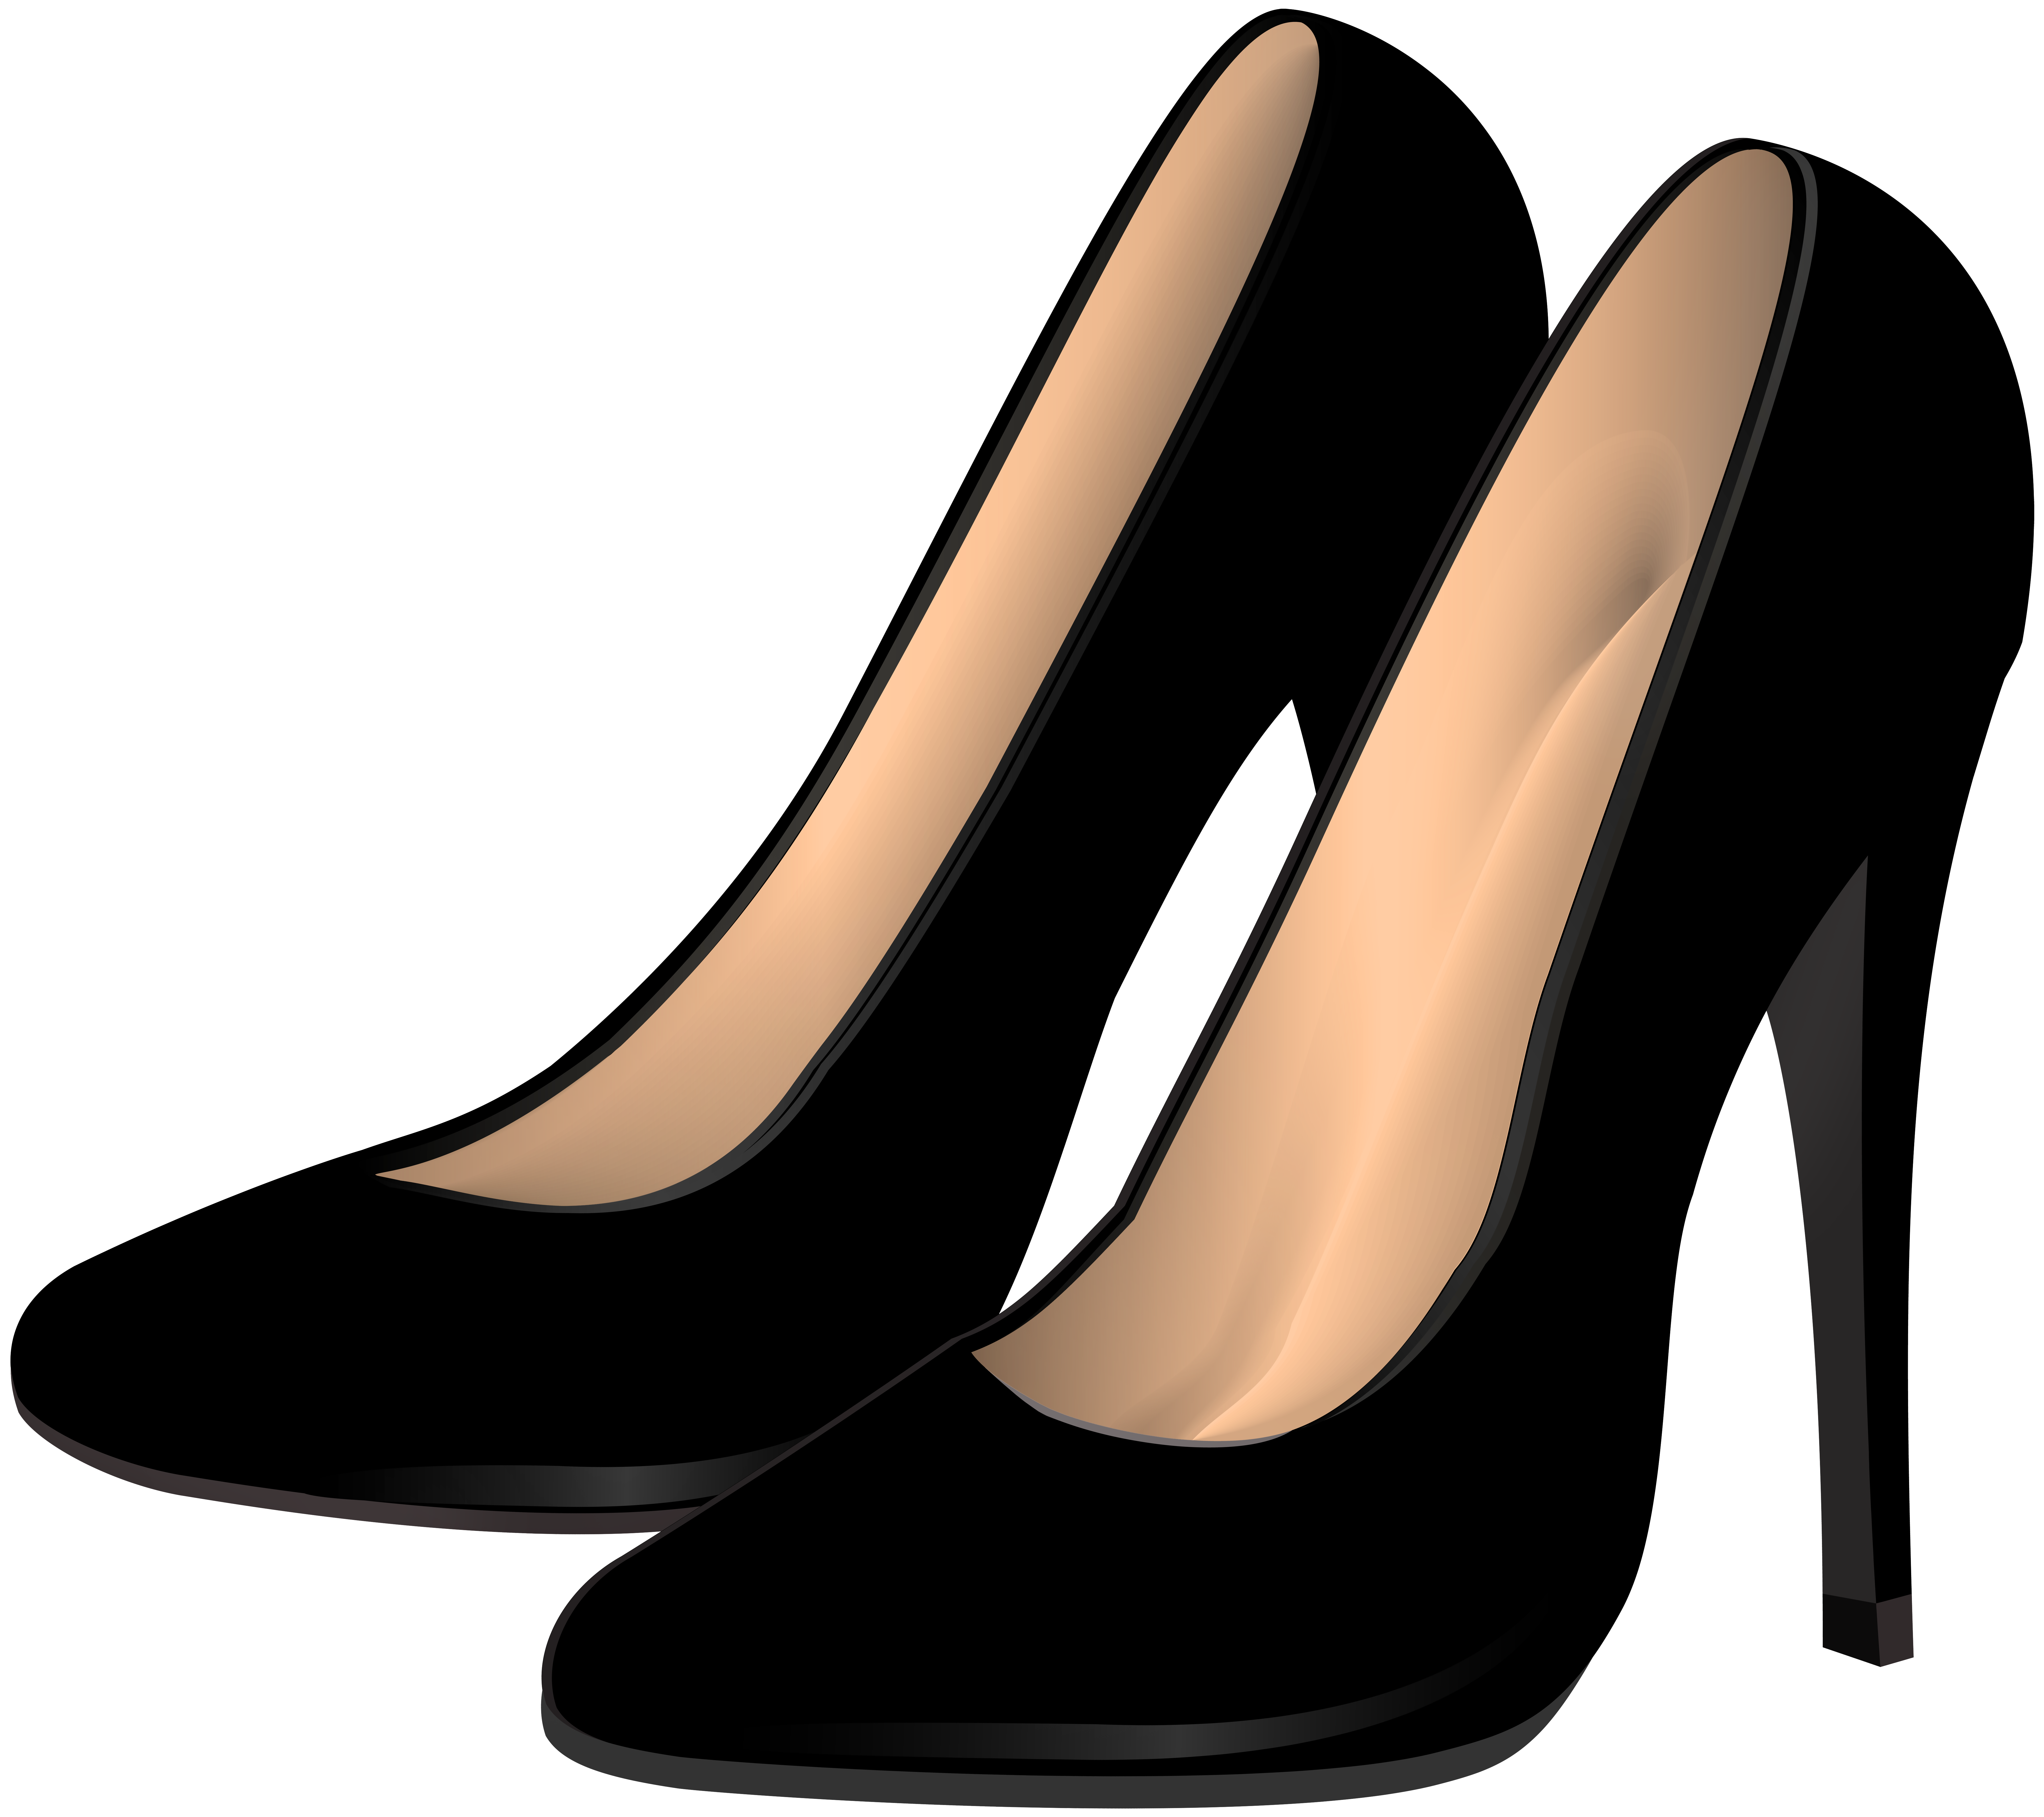 White Heel Women Shoe PNG HD Quality